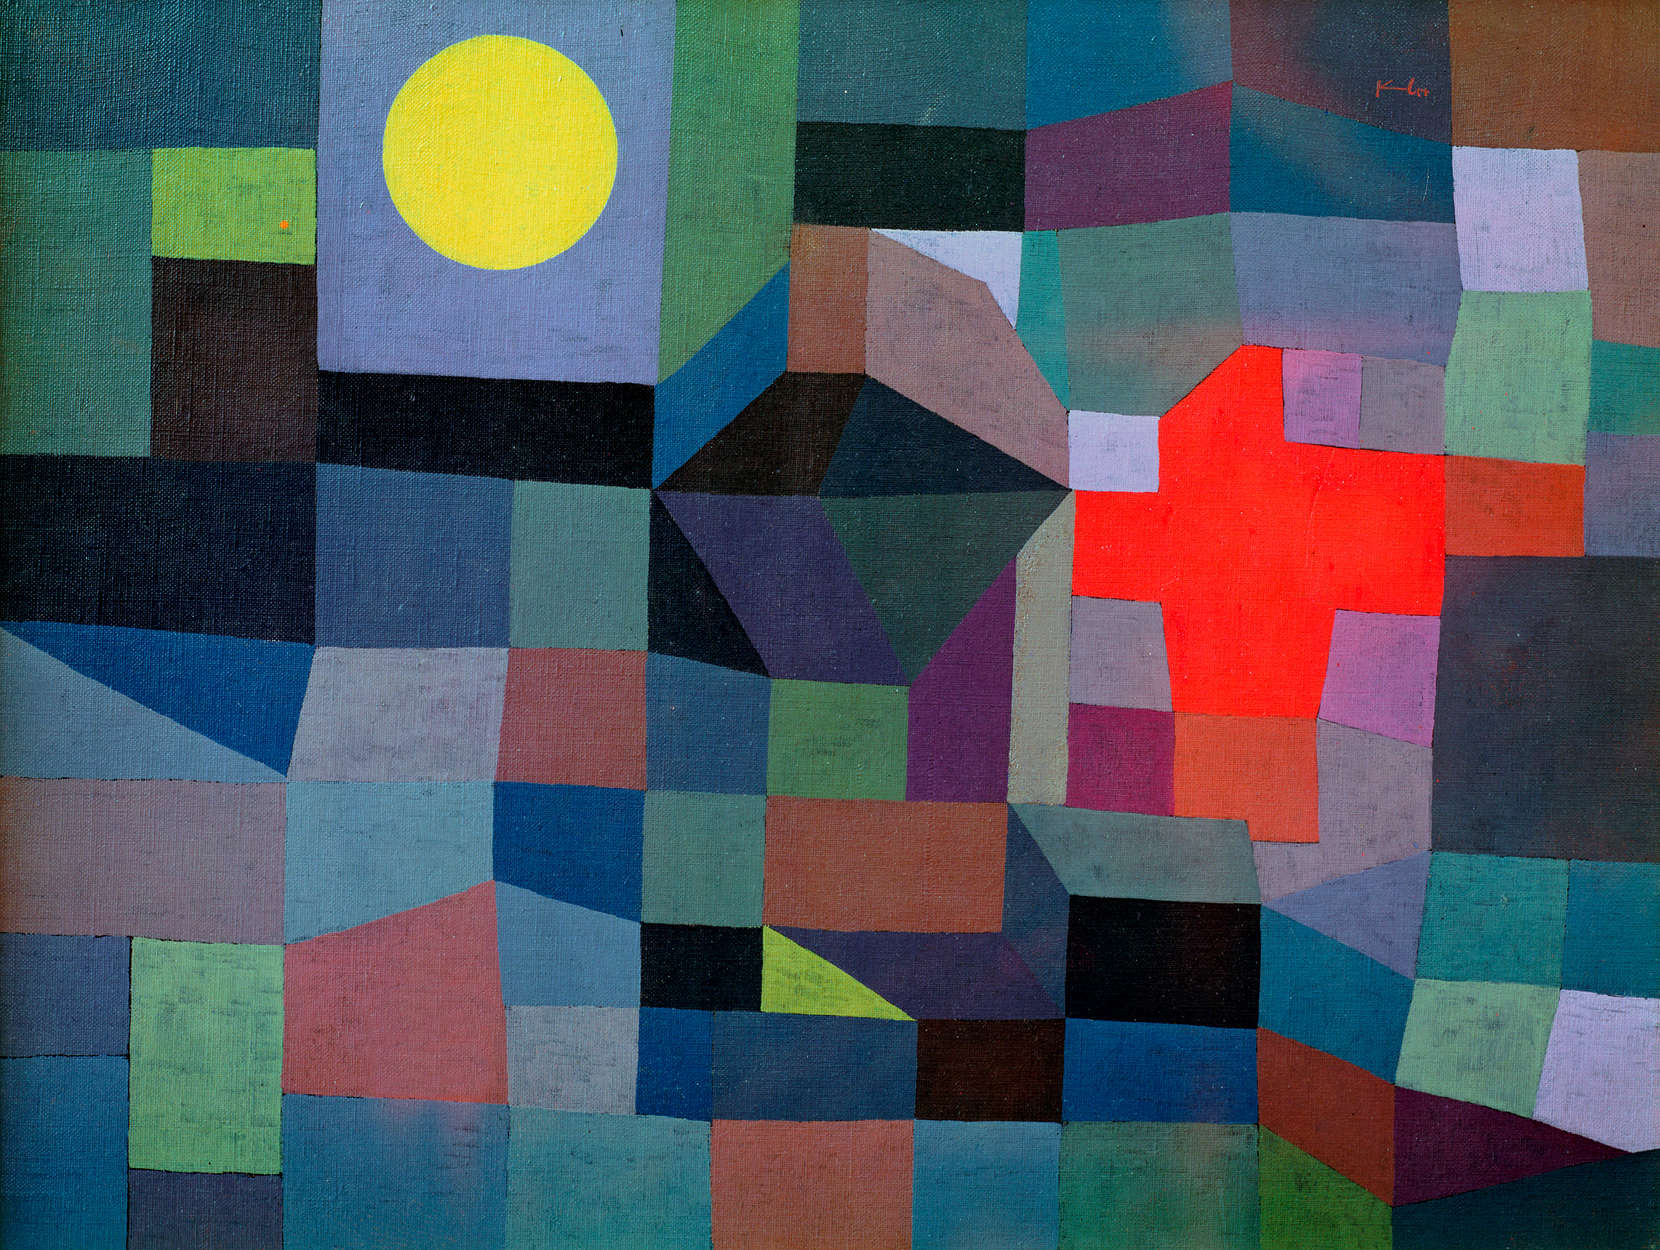             Vuur bij volle maan" muurschildering van Paul Klee
        